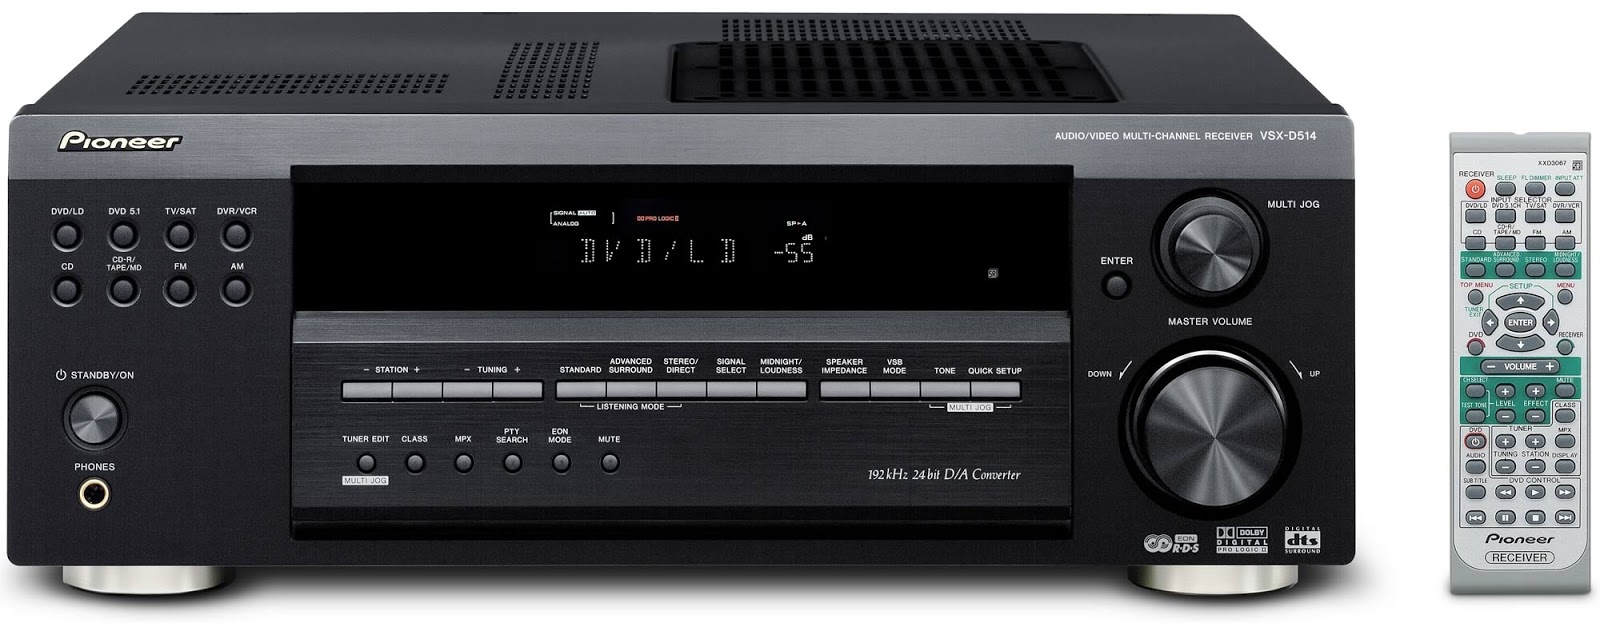 Pioneer VSX-D514 - AV Receiver | AudioBaza